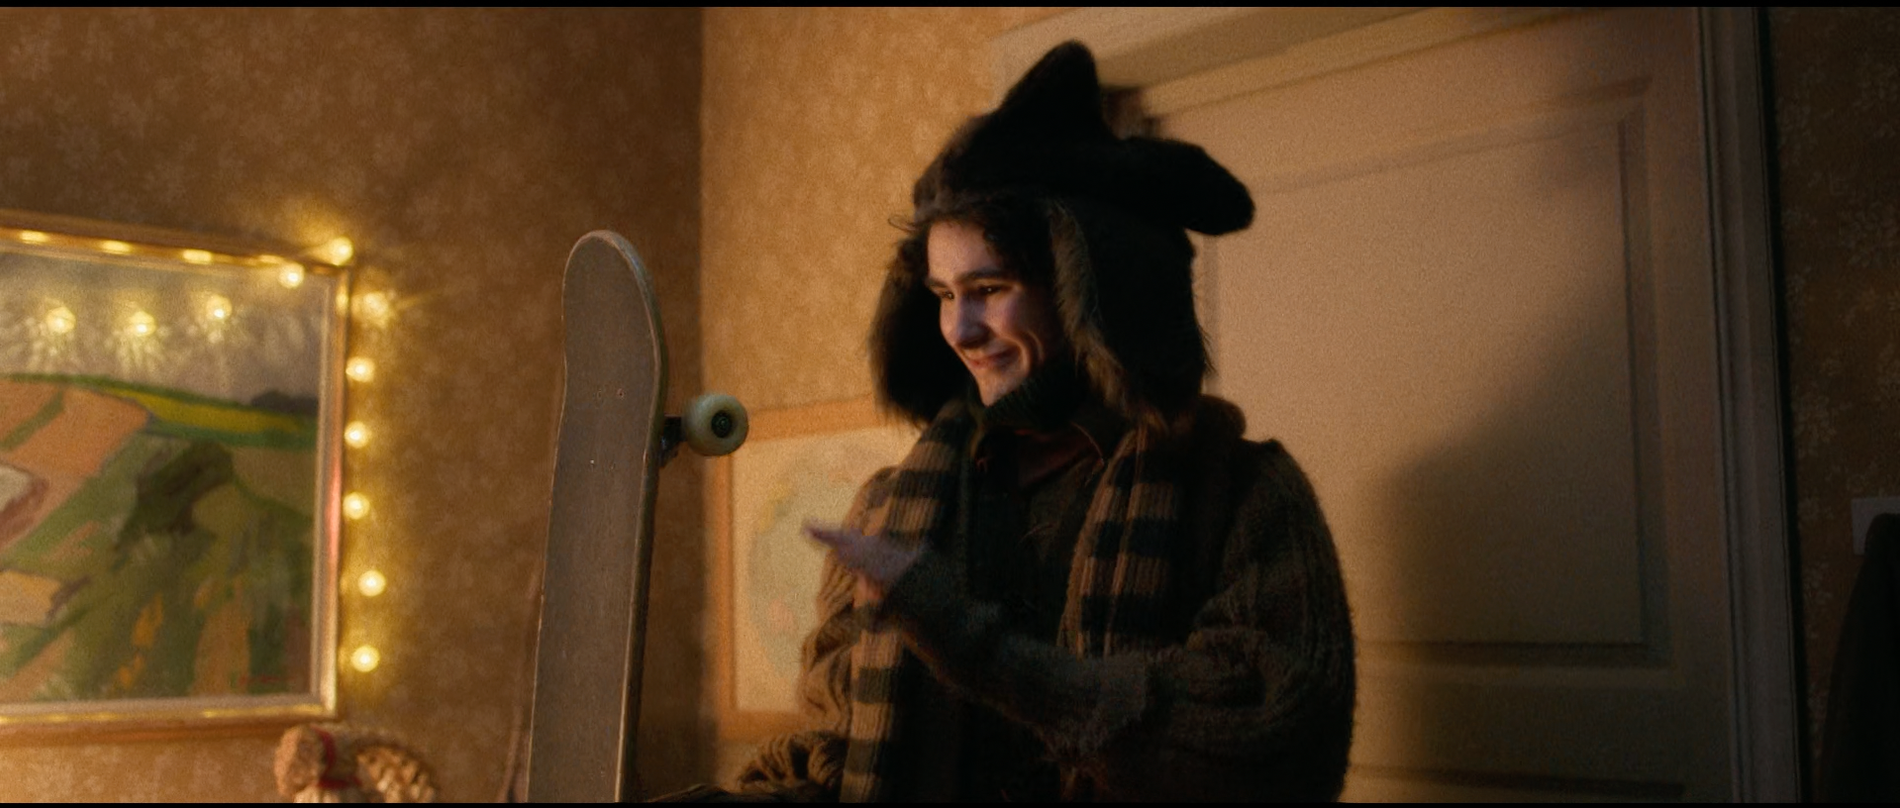 Kotte håller i en skateboard i avsnitt 20.